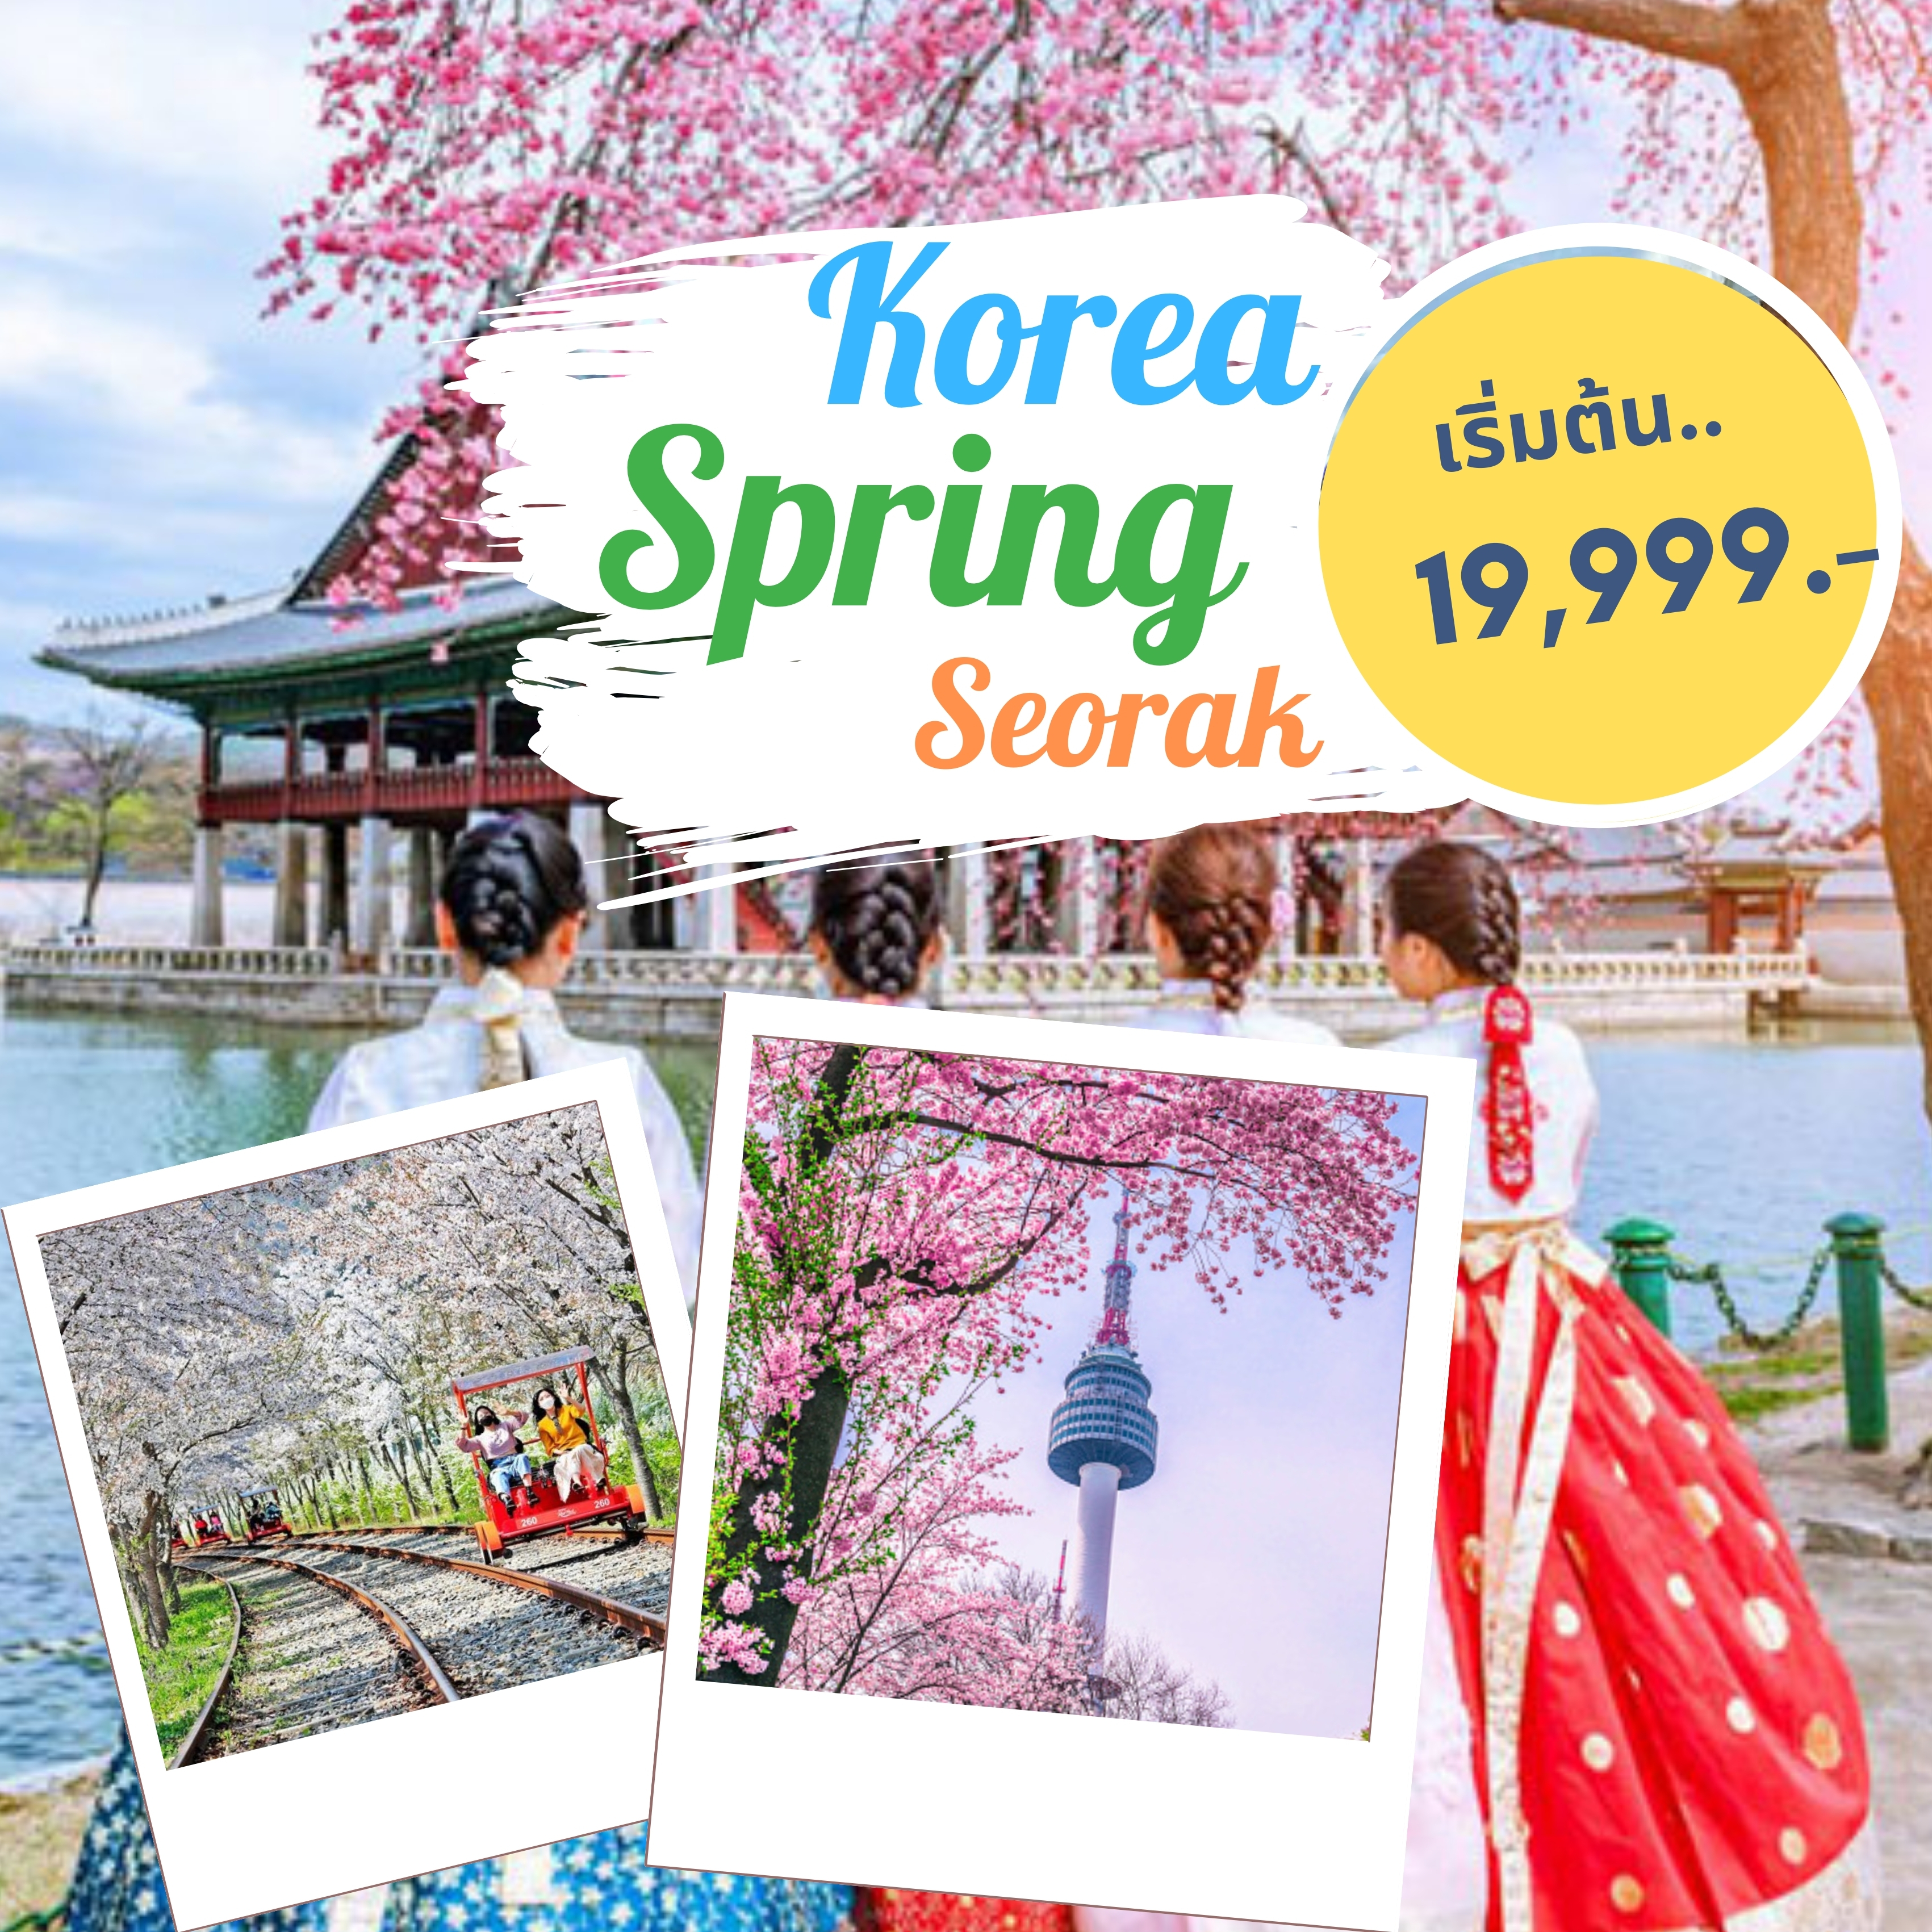 ทัวร์เกาหลี Korea Spring Seorak  เกาะนามิ โซรัคซาน พระใหญ่ เอเวอร์แลนด์ กรุงโซล พระราชวัง ช้ปปิ้งเมียงดง ฮงแด เกาะยออิโด